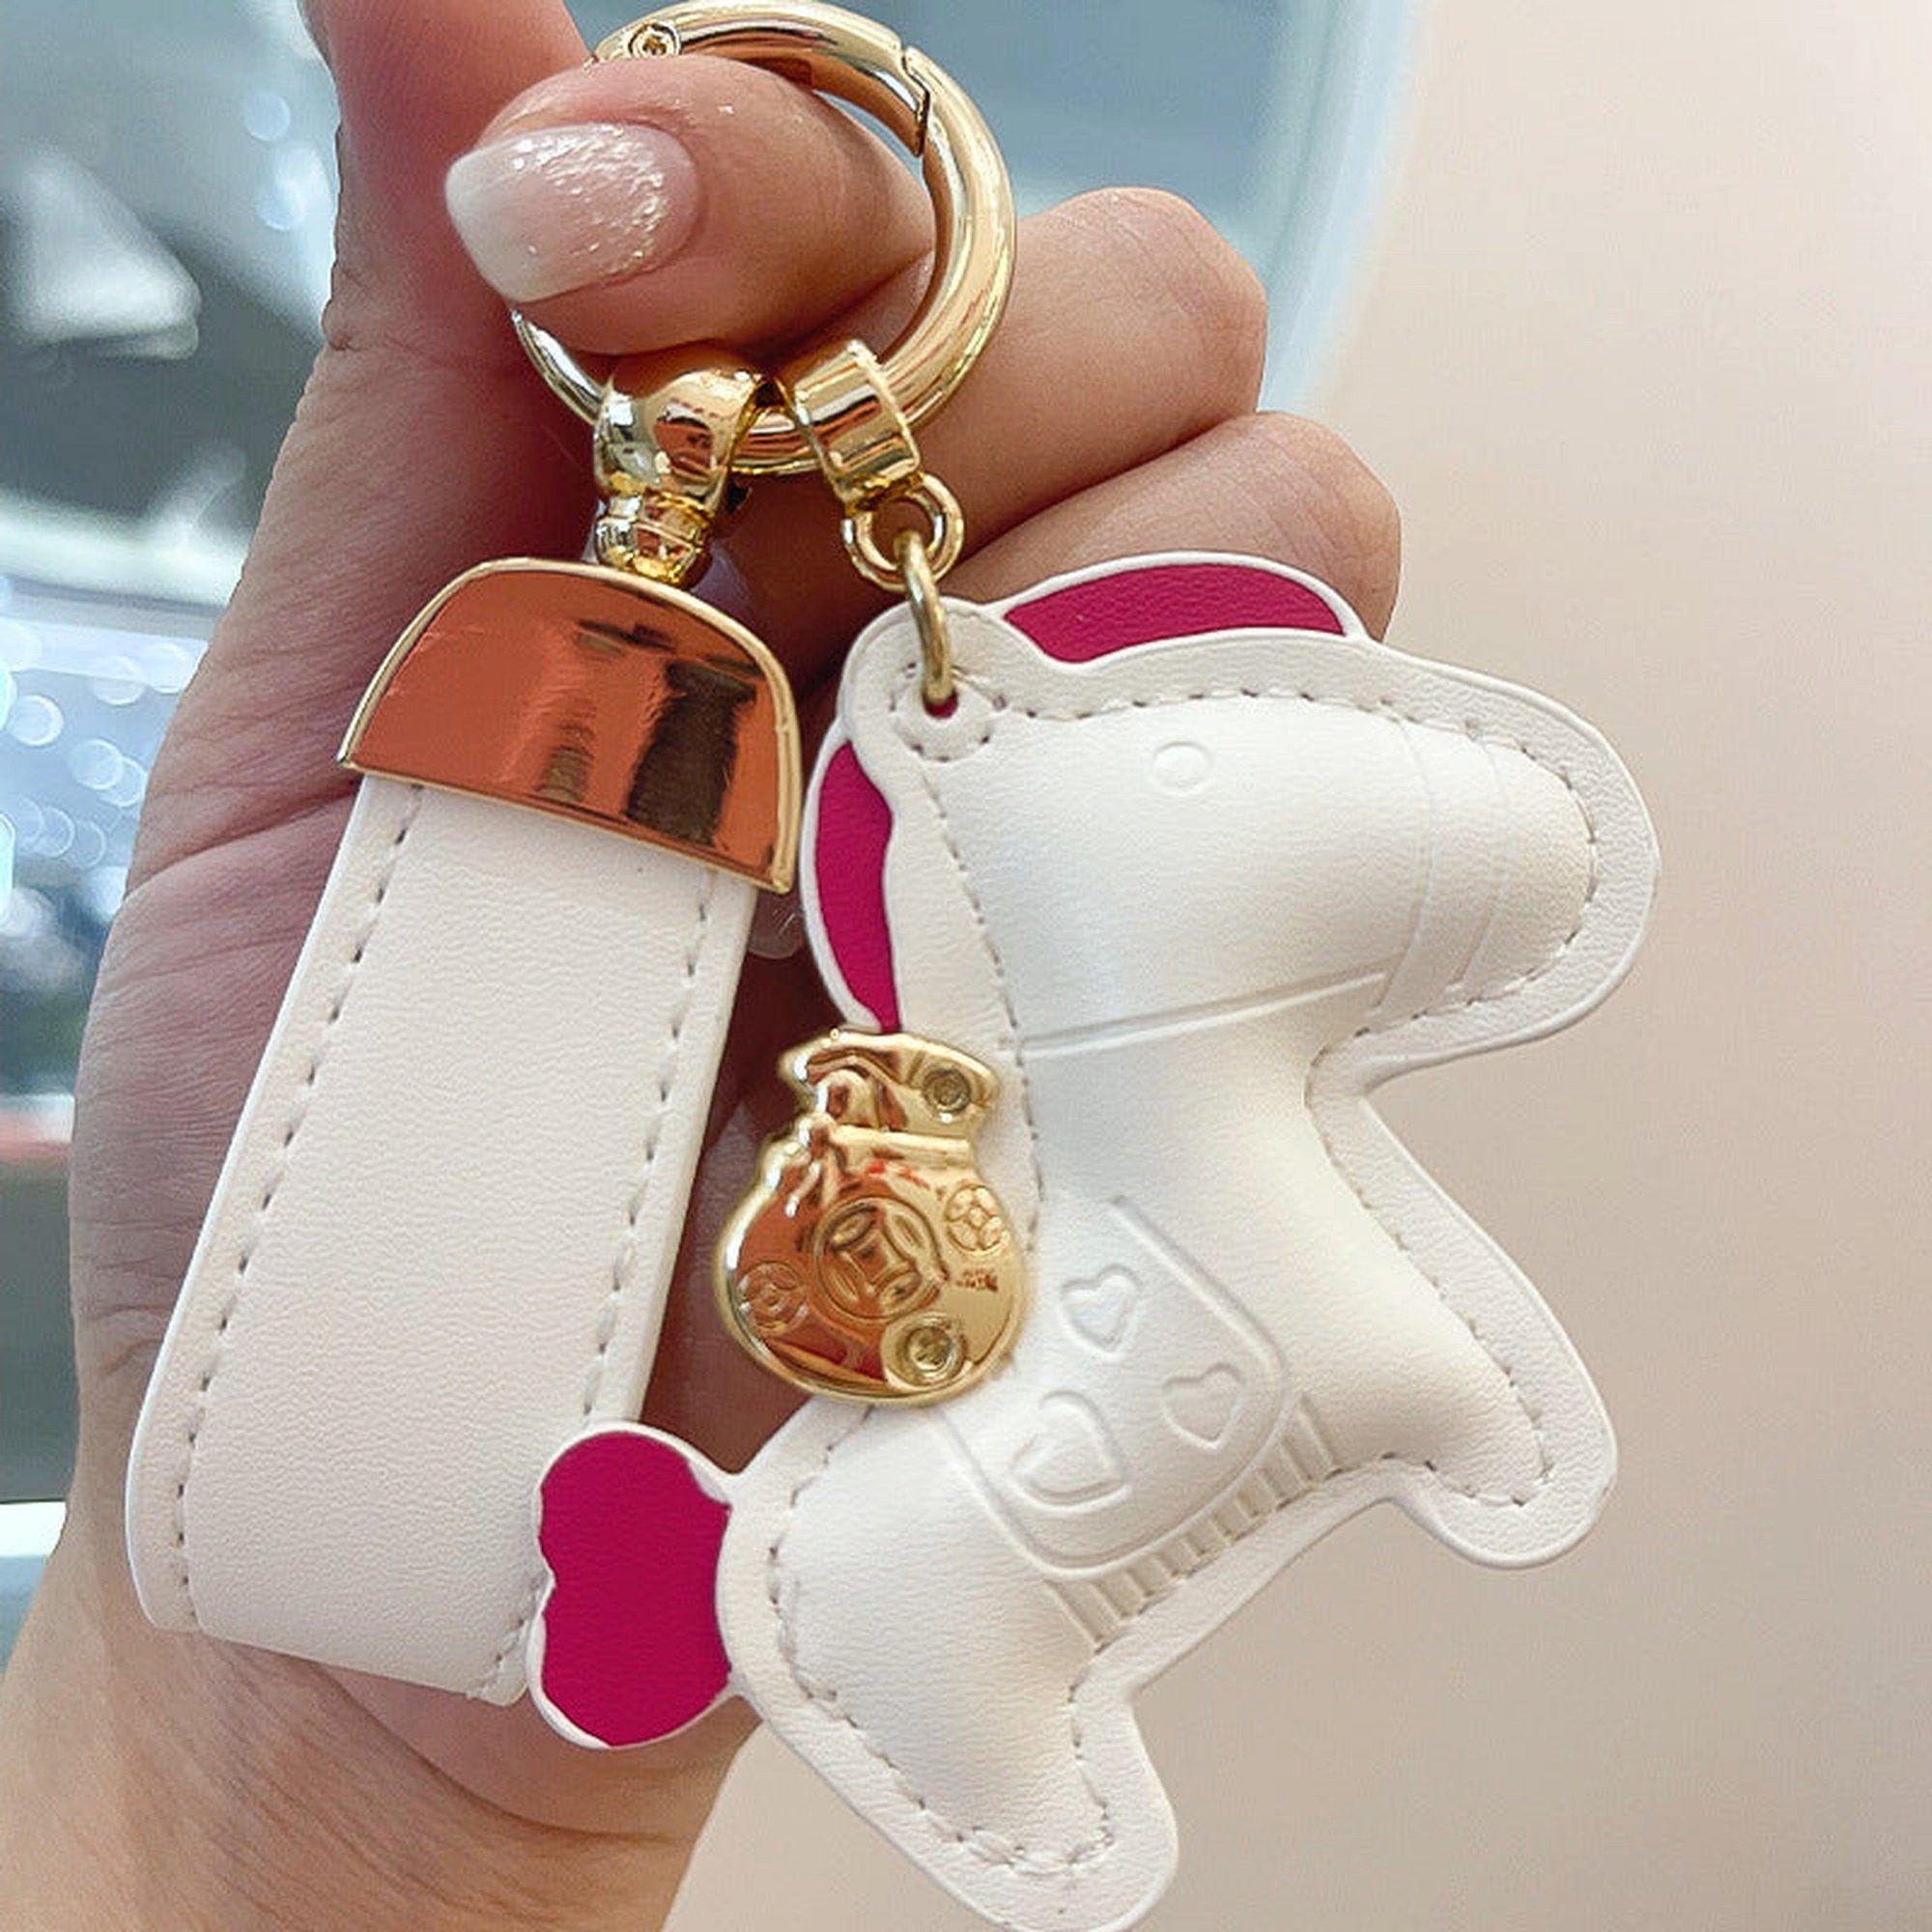 YRIIOMO Schlüsselanhänger Der niedliche Pony-Schlüsselanhänger ist einfach und exquisit